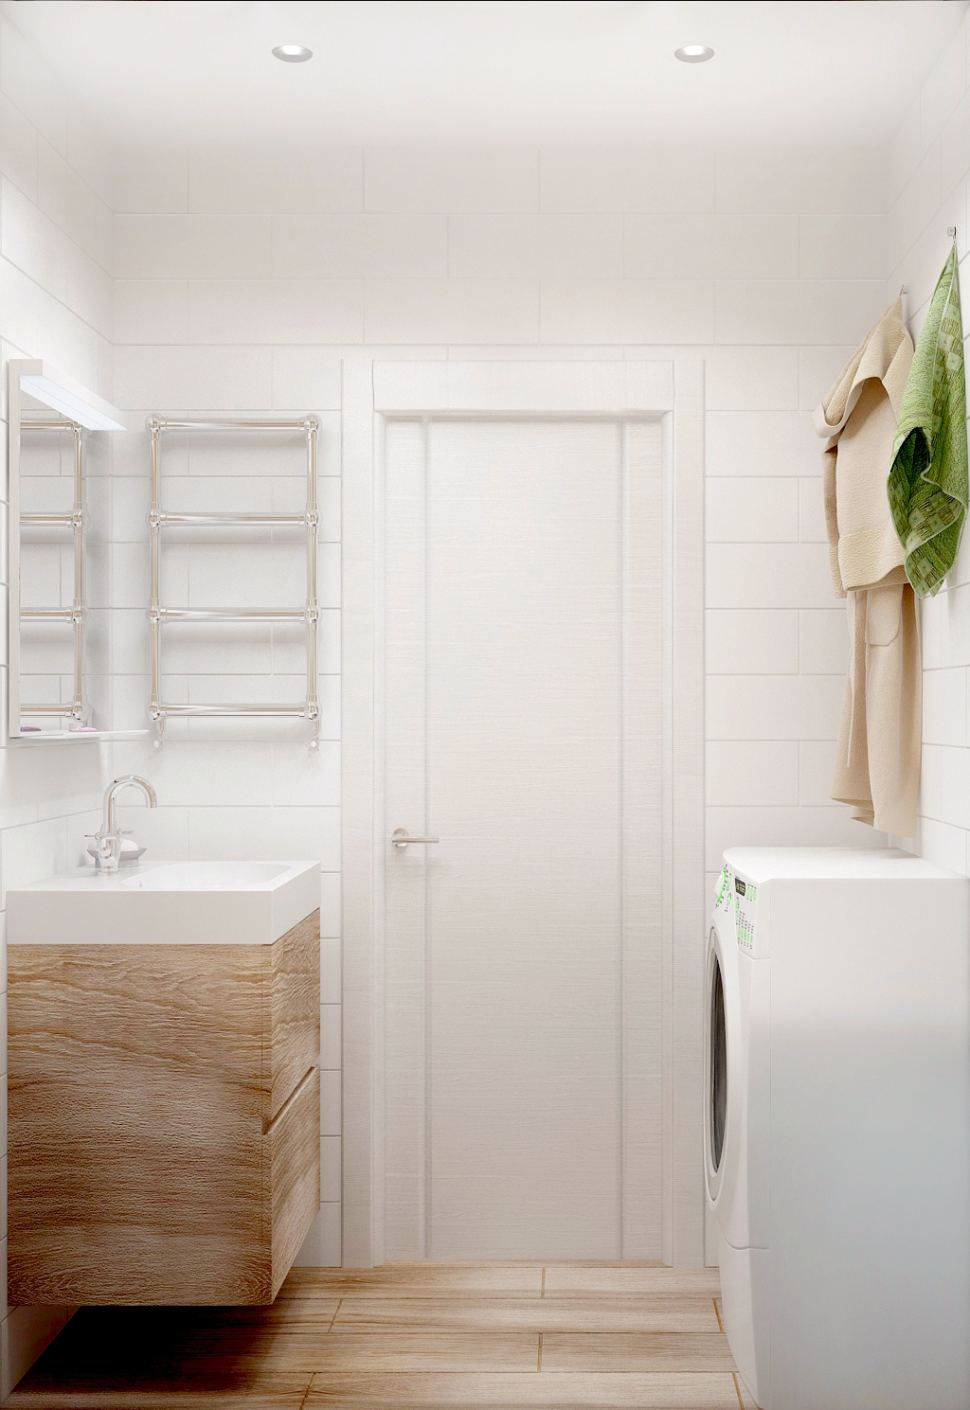 Визуализация ванной комнаты 3 кв.м, керамическая плитка под дерево, стиральная машина, полки, мойка, зеркало, полотенцесушитель